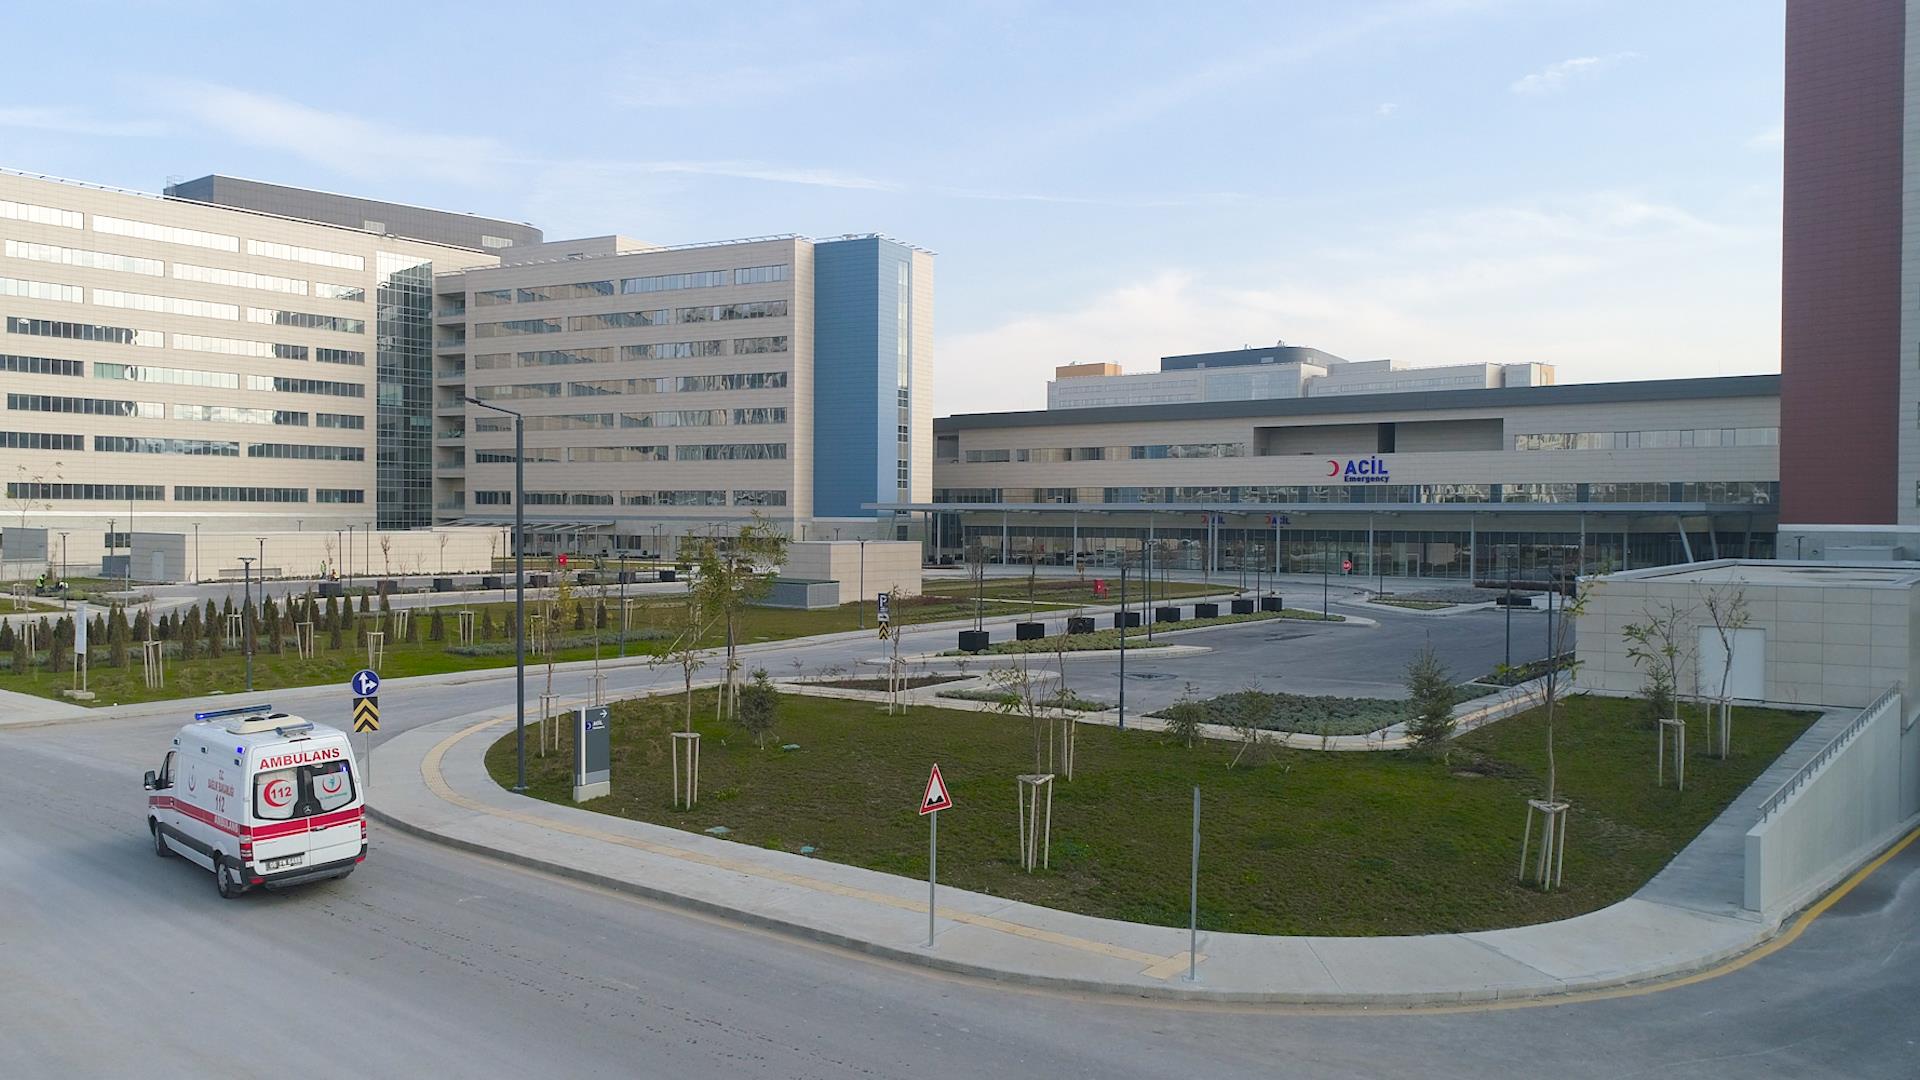 Bilkent Şehir Hastanesi'nden 7/24 uzman hekim poliklinik iddiasına yalanlama